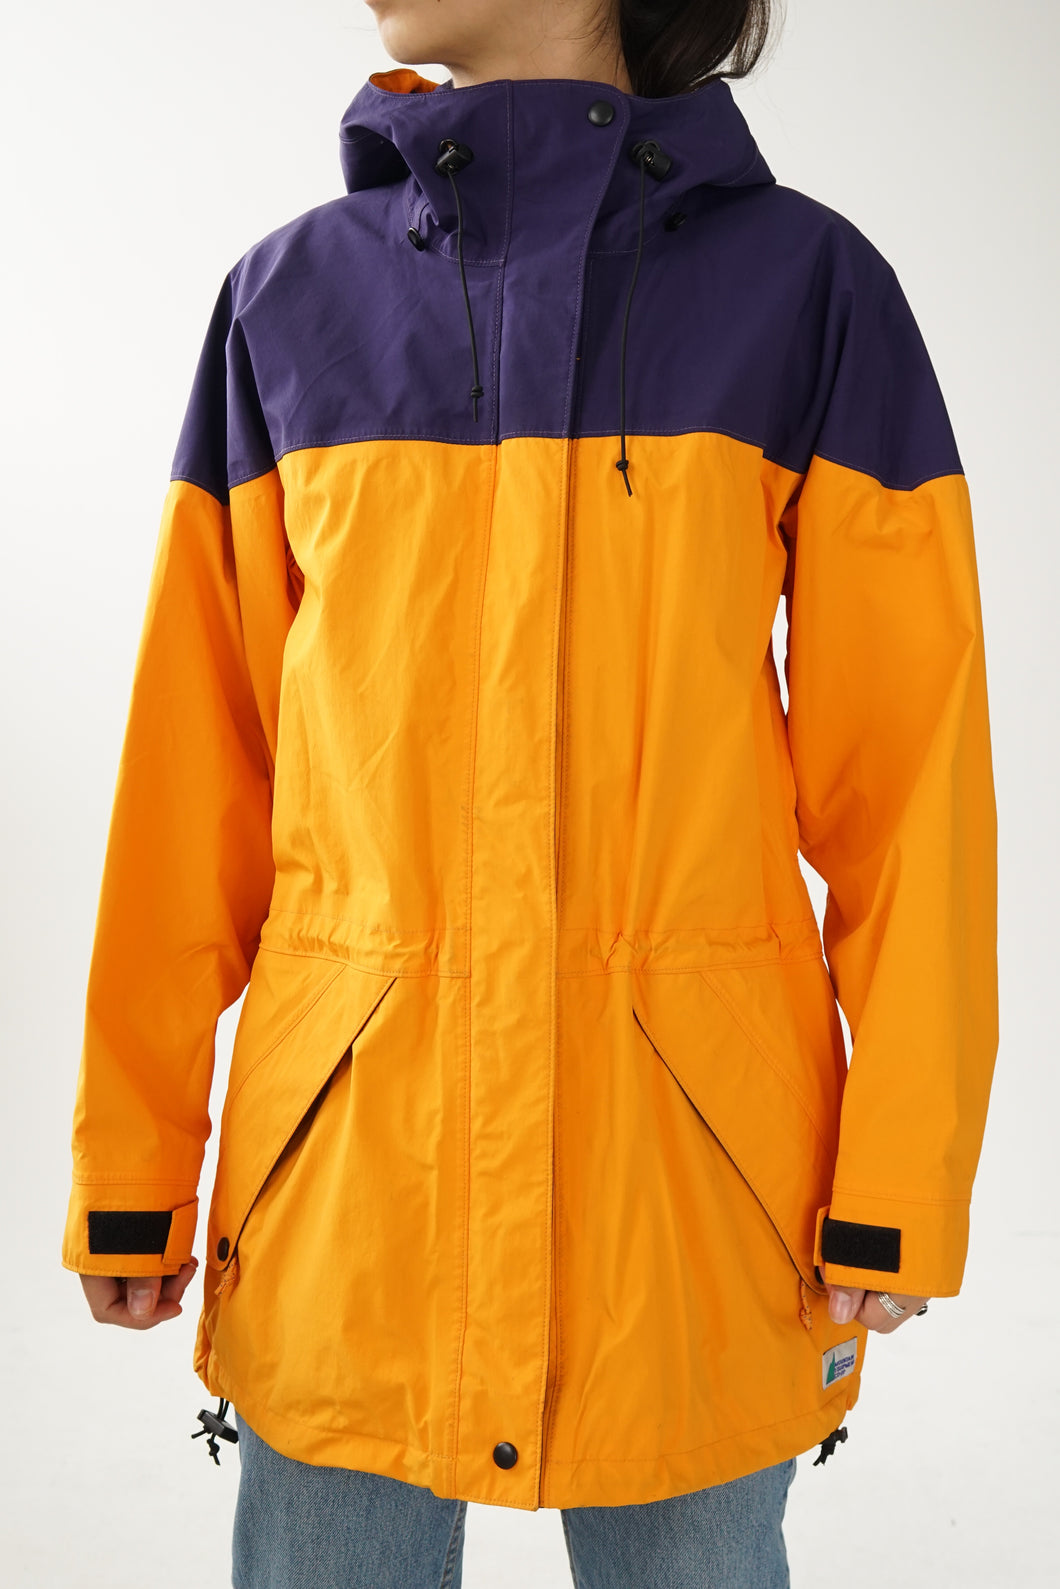 Manteau imperméable  hardshell vintage MEC en Gore-tex jaune et mauve pour femme taille L